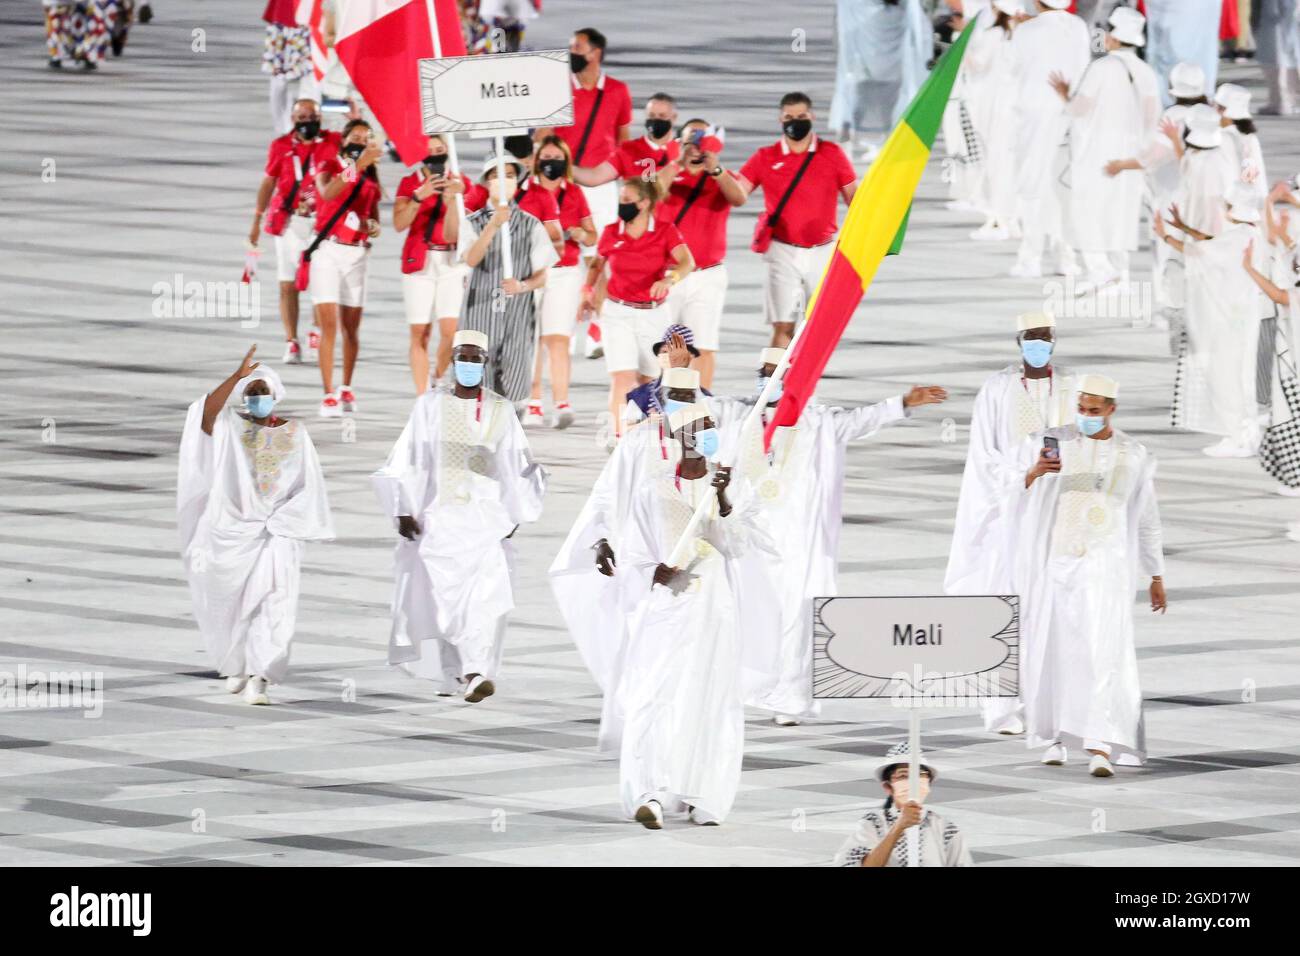 23rd DE JULIO de 2021 - TOKIO, JAPÓN: El portador de la bandera de Malí Seydou Fofana entra en el Estadio Olímpico con su delegación durante el segme Desfile de las Naciones Foto de stock